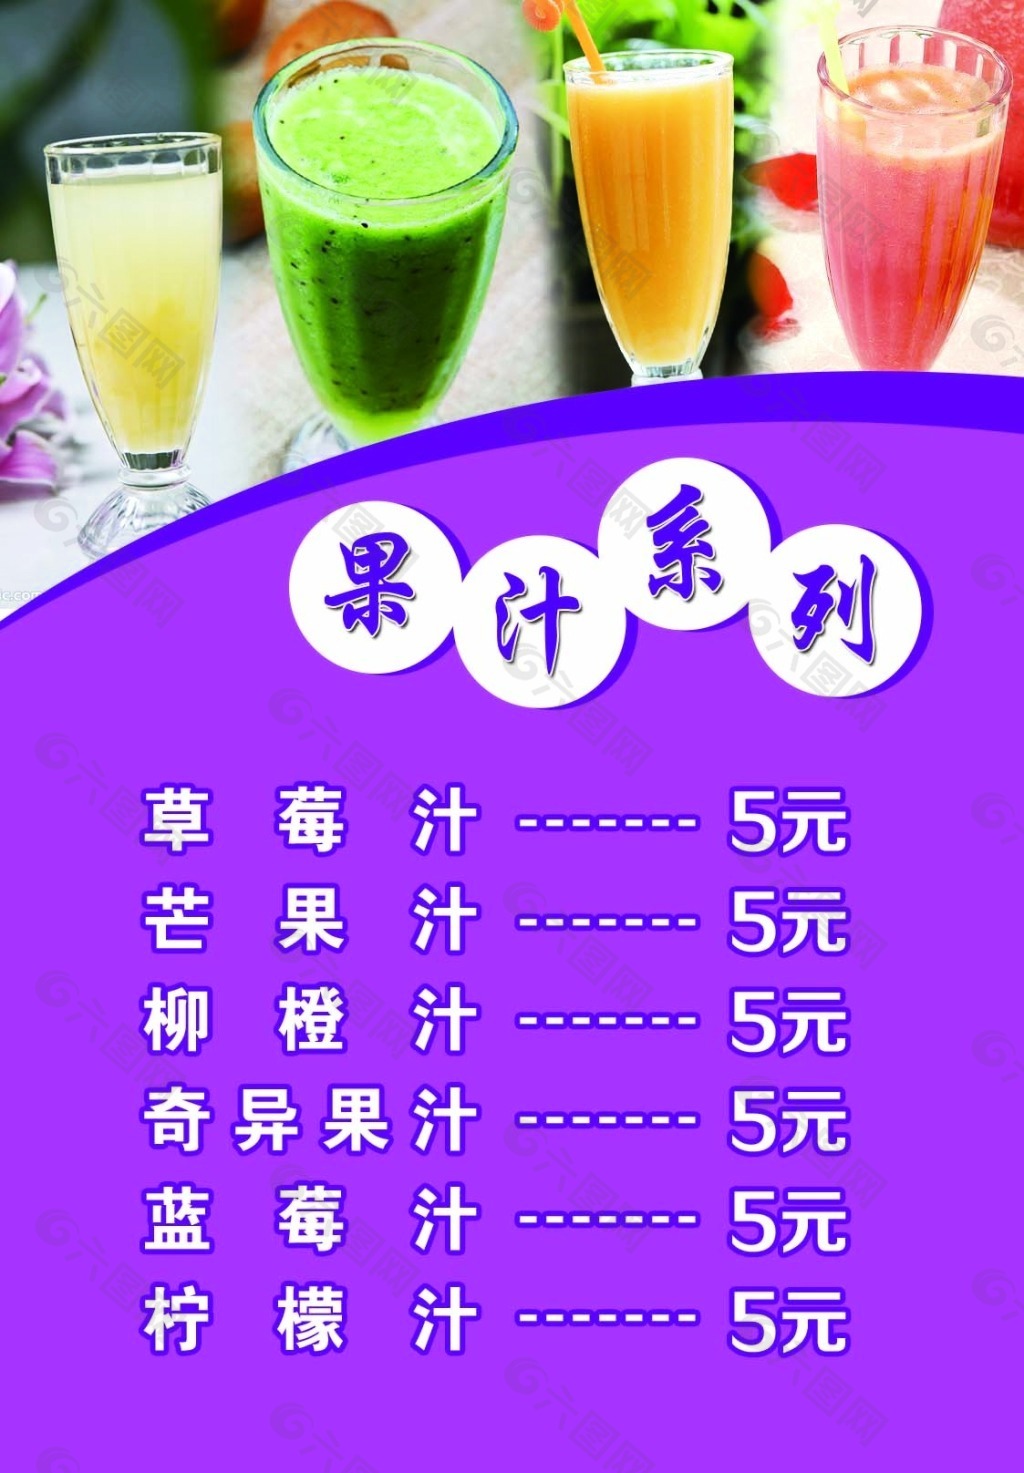 梦幻价格表灯箱 七彩虹系列之五-果汁系列